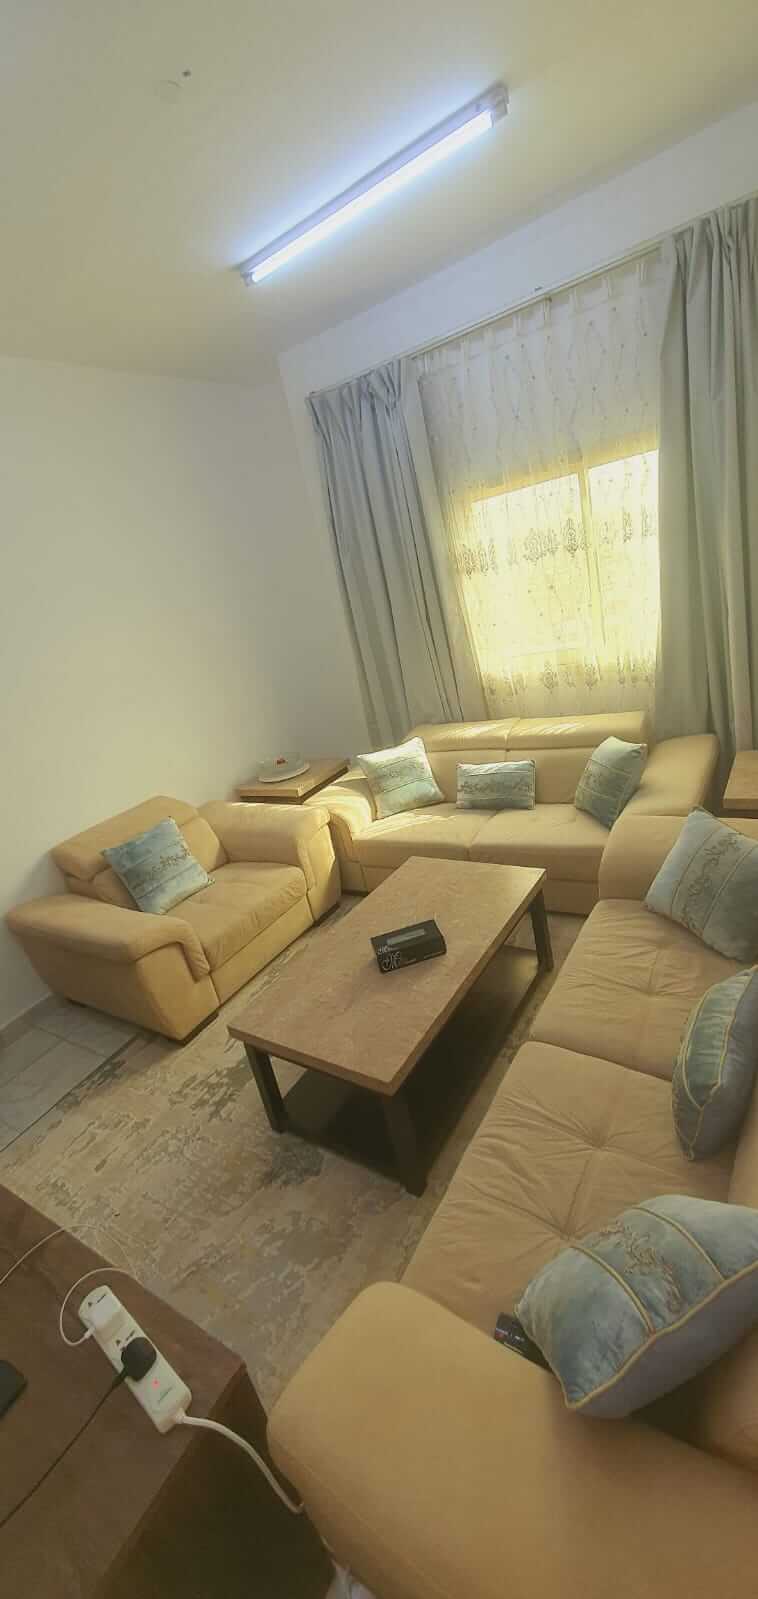 للإيجار الشهري في عجمان غرفة وصالة | Apartment for monthly rent in Ajman